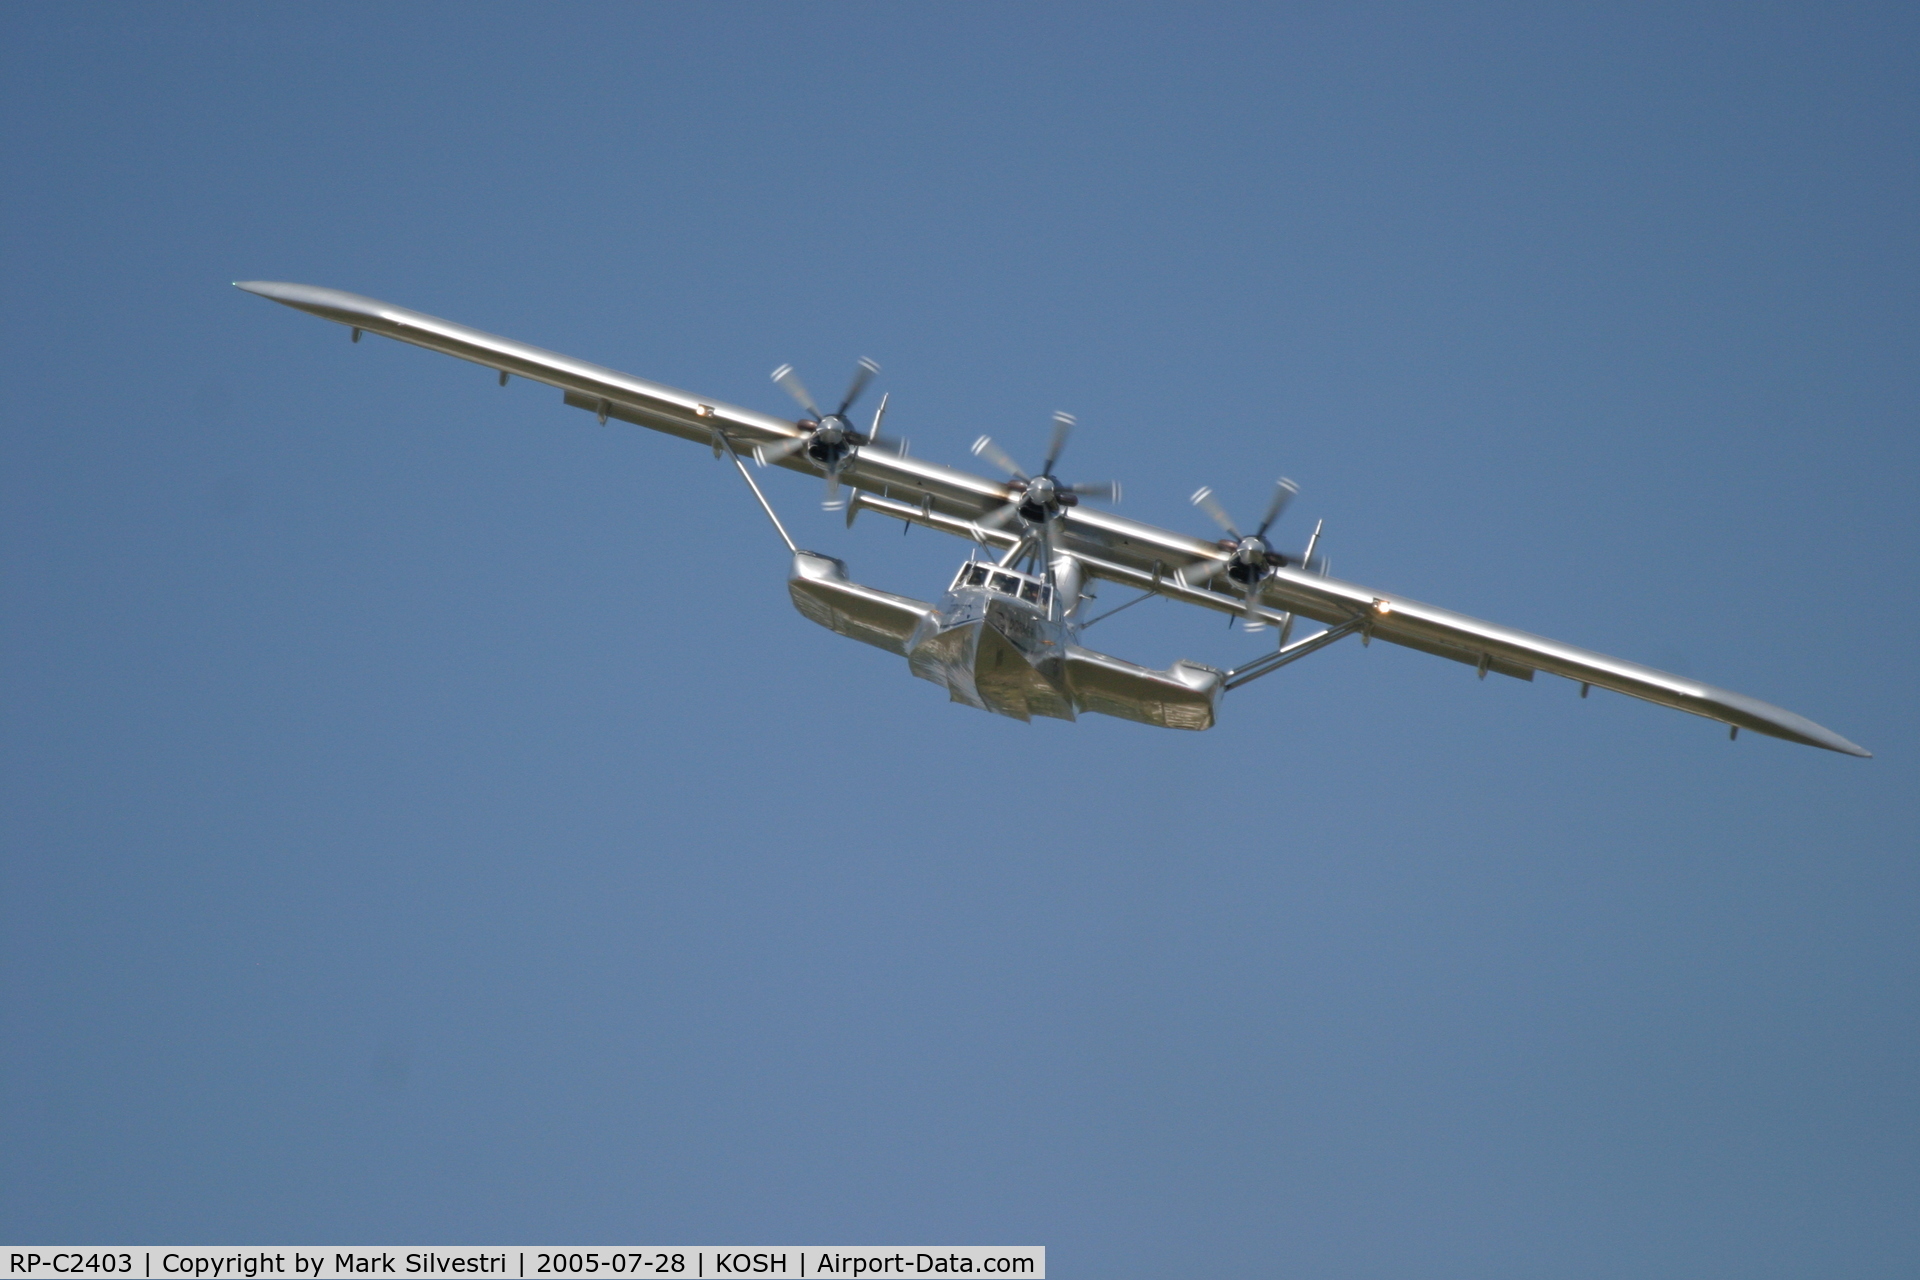 RP-C2403, 2000 Dornier Do-24ATT C/N 5345, Oshkosh 2005